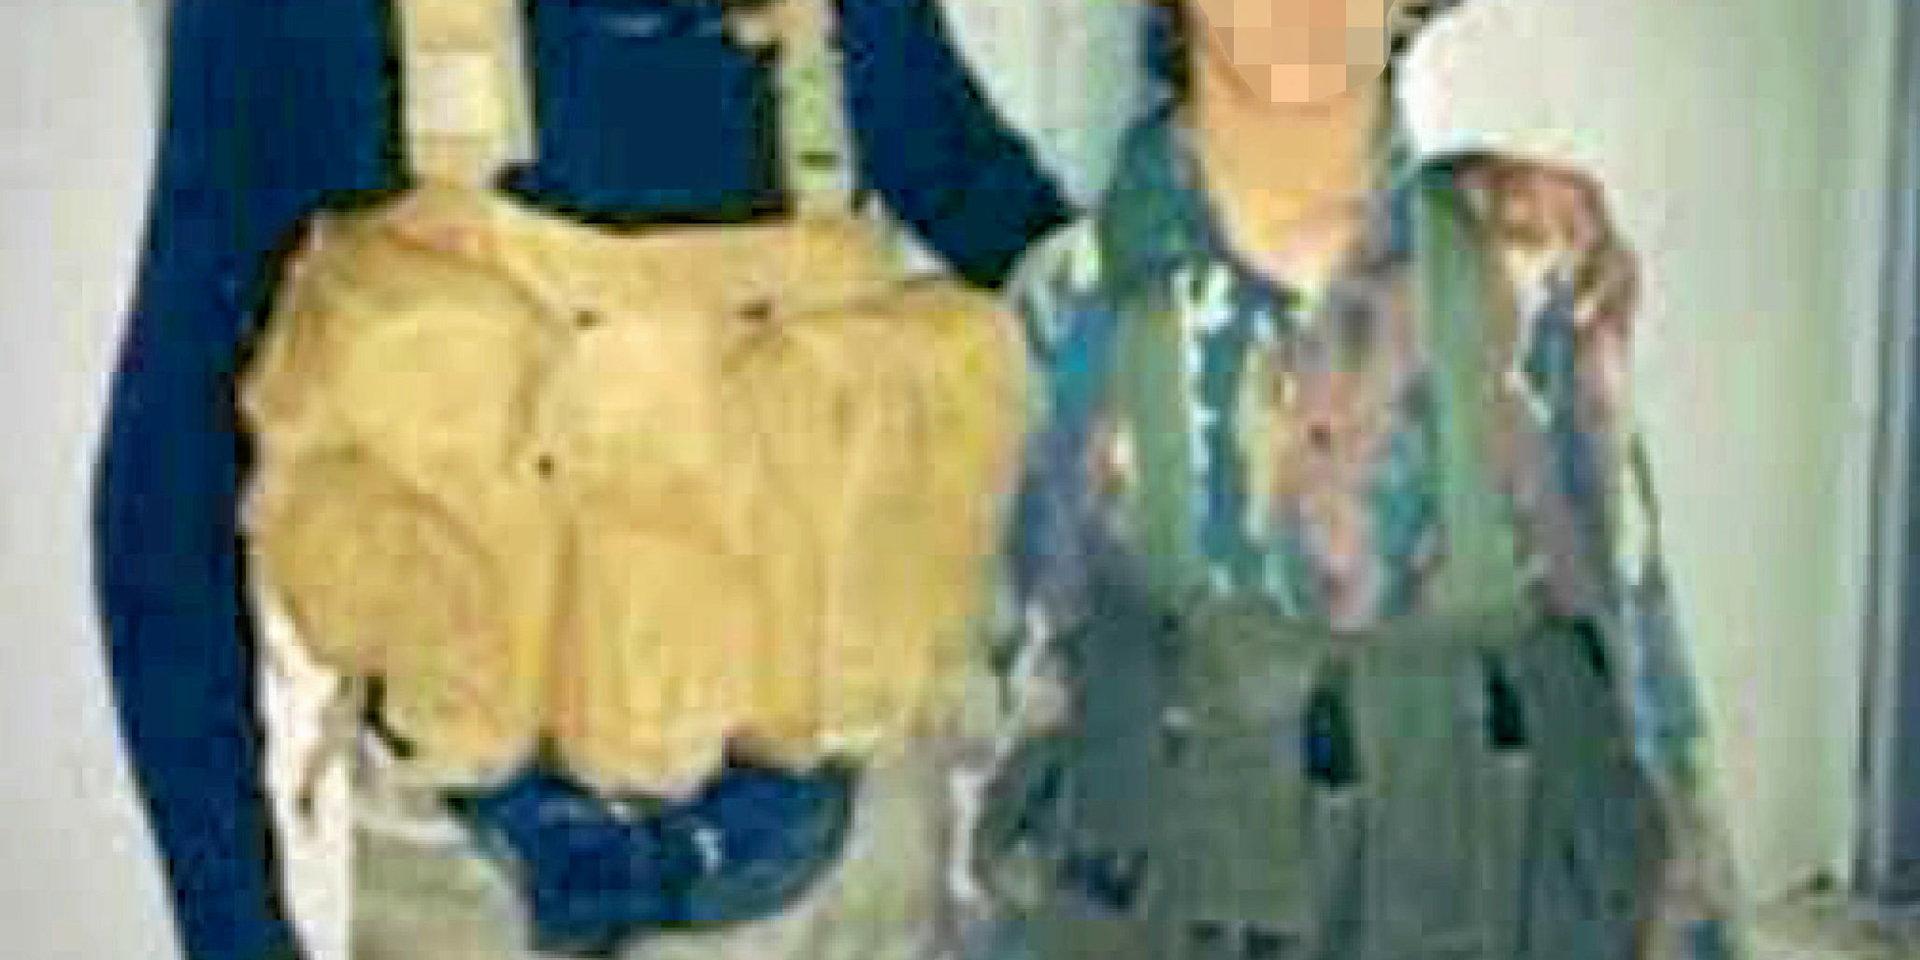 Ett av bildbevisen som åklagarna åberopar mot den 49-åriga kvinnan är det här fotot av hennes son som 13-åring jämte en vuxen IS-krigare.